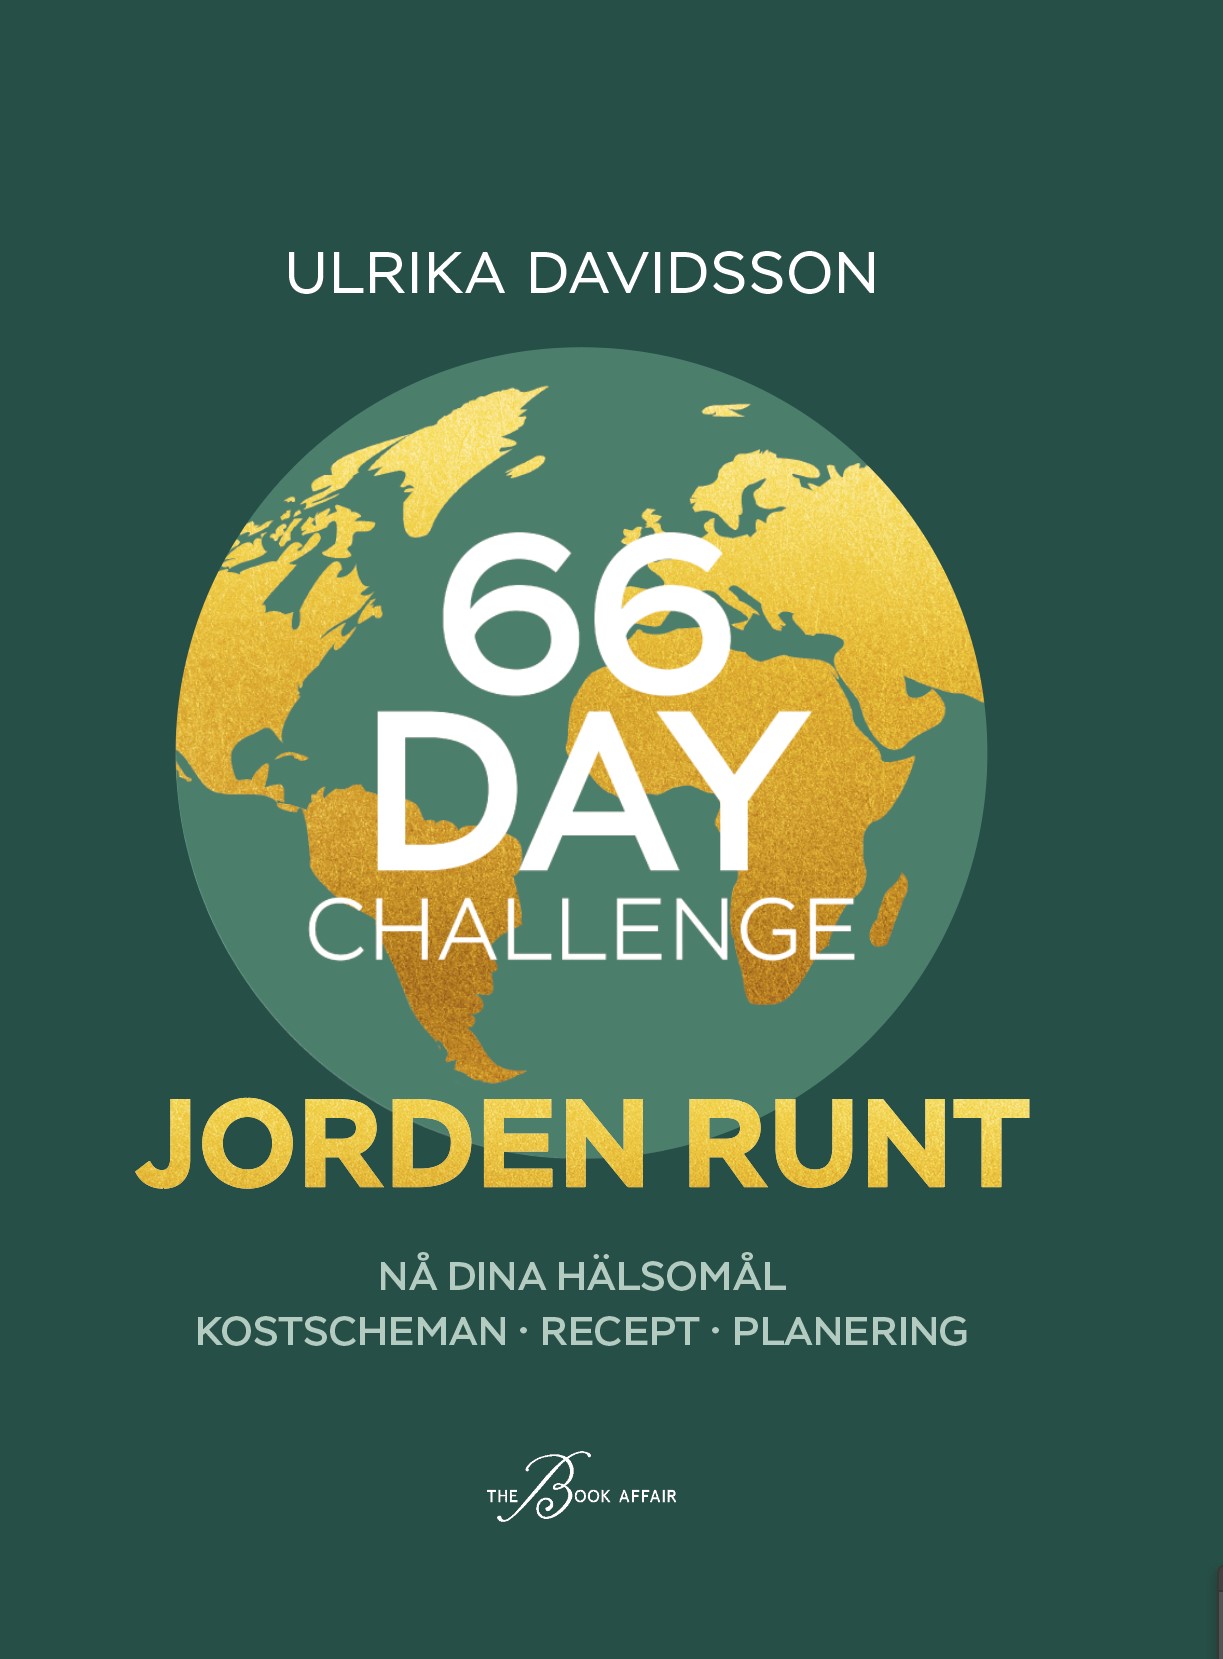 66 day challenge - jorden runt